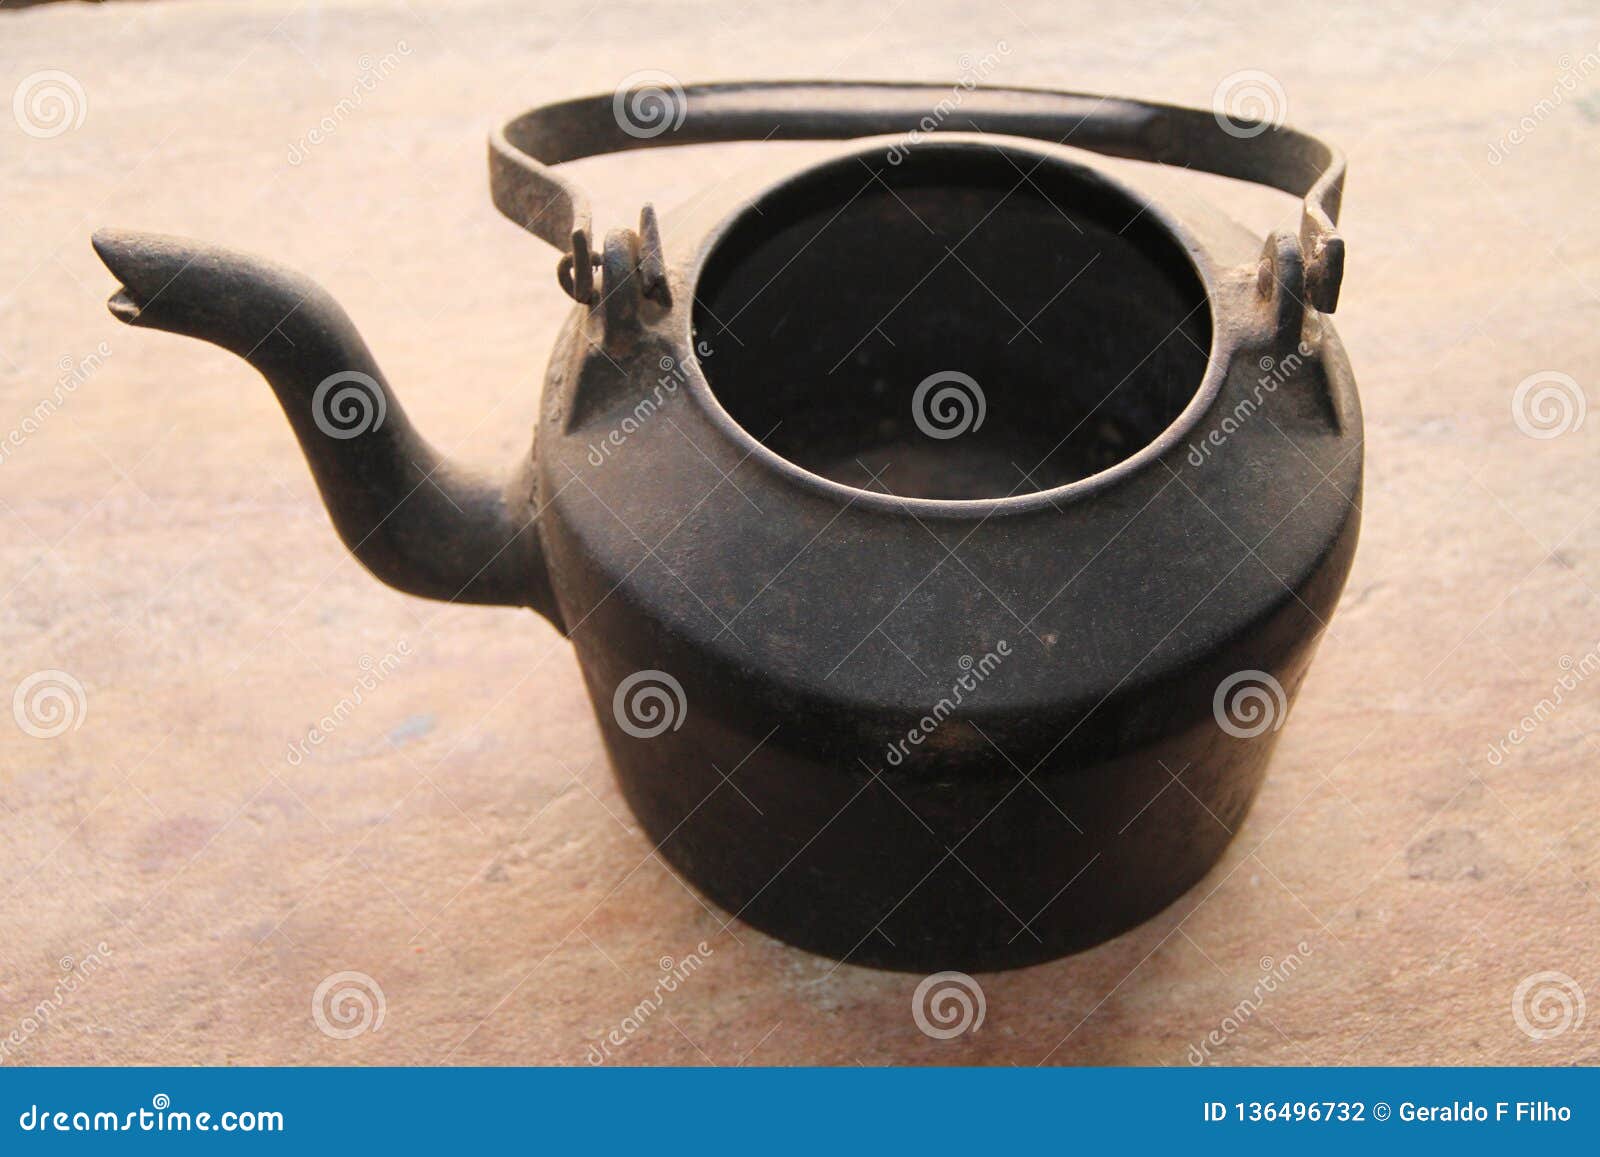 iron kettle utensil old center sao tome das letras minas gerais brazil